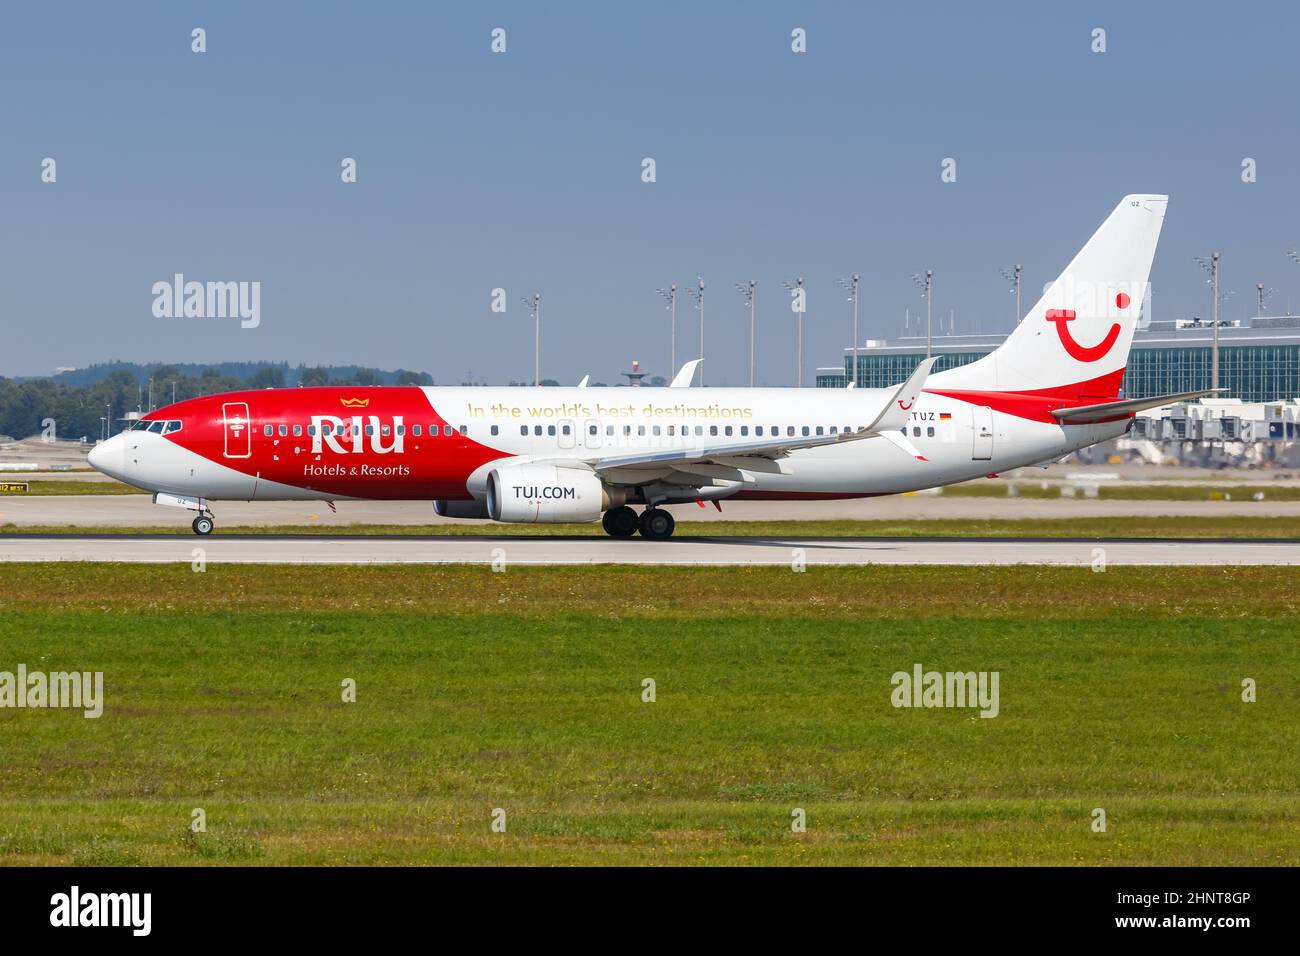 TUI Boeing 737-800 avion Munich aéroport en Allemagne RIU Hotels Resorts offre une décoration spéciale Banque D'Images